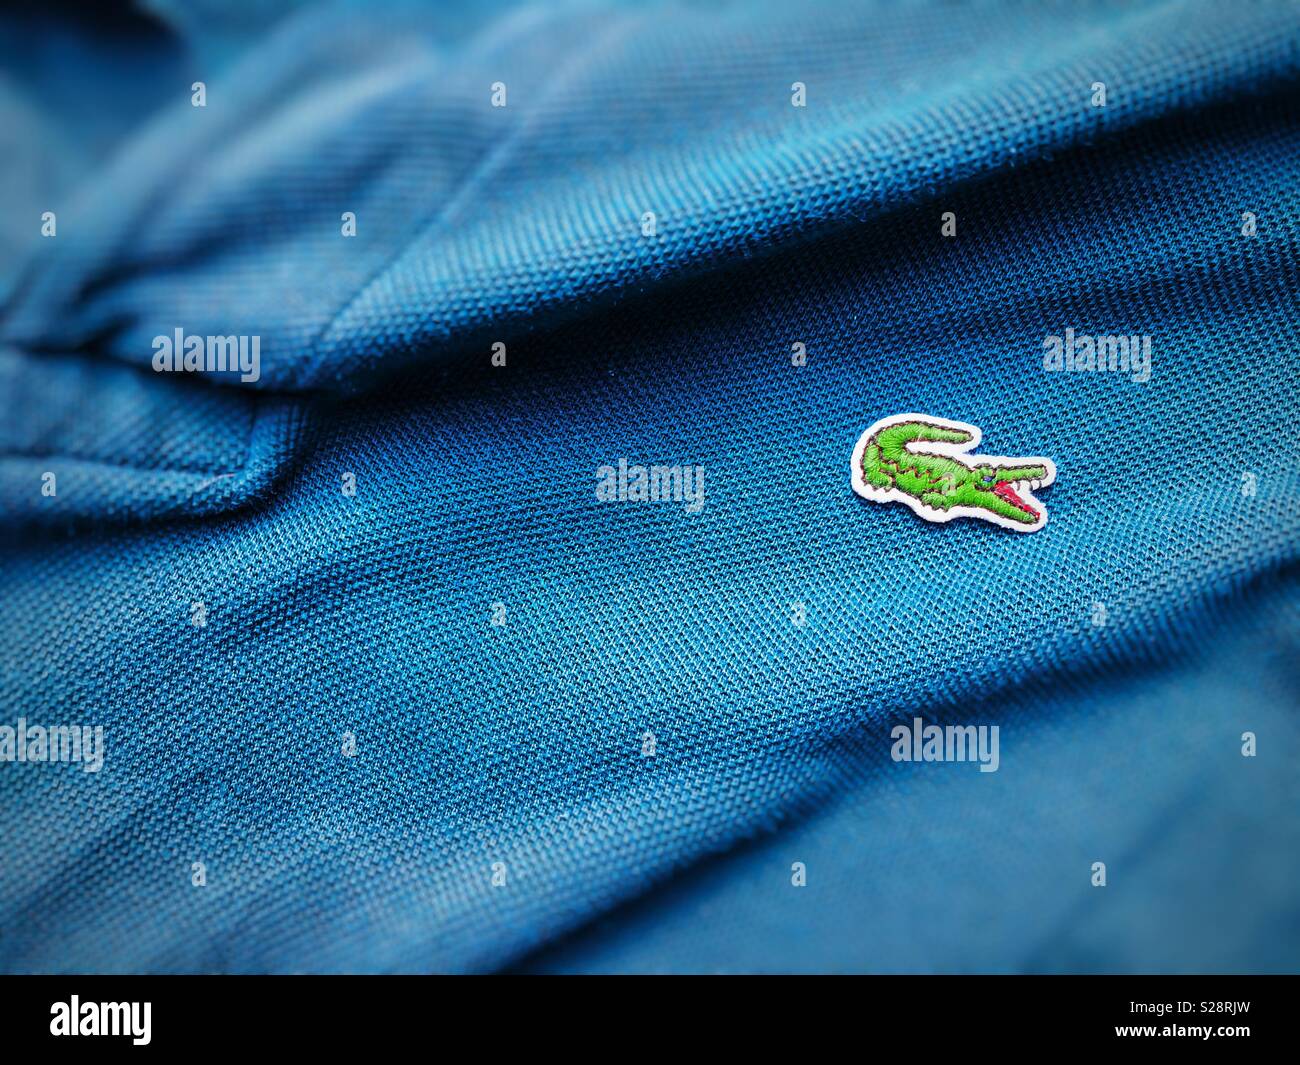 Lacoste shirt immagini e fotografie stock ad alta risoluzione - Alamy